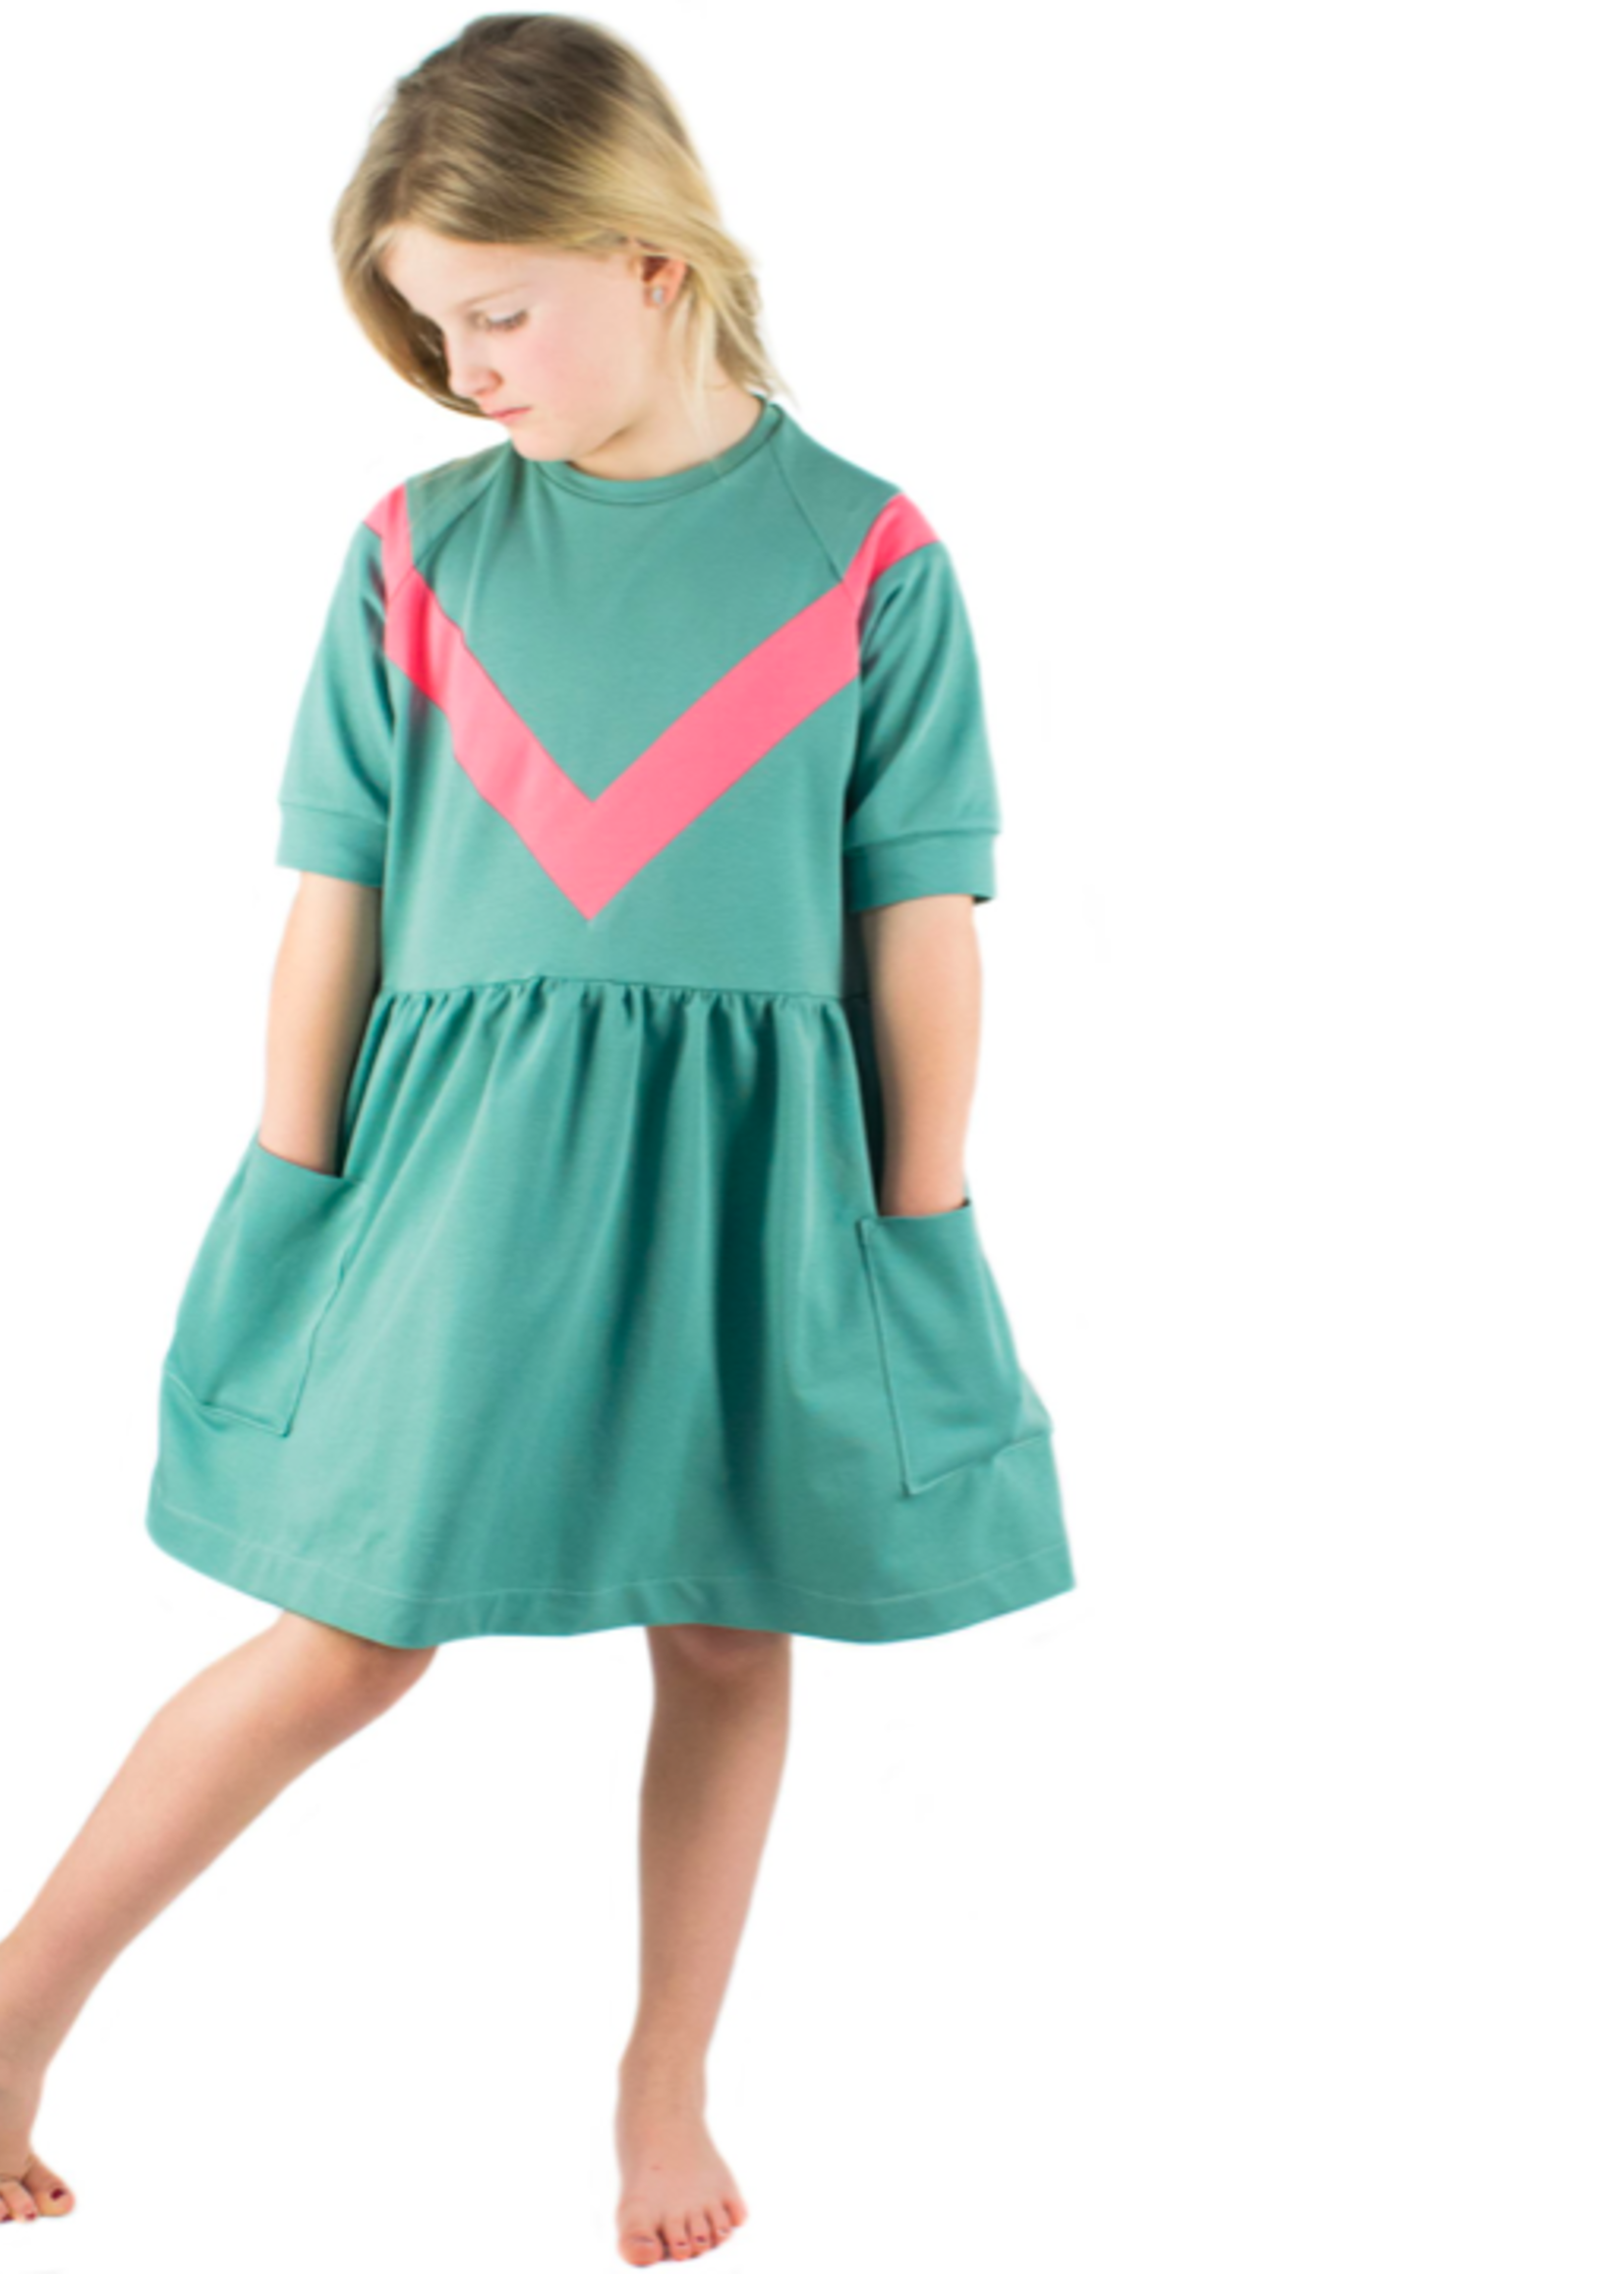 Bel'Etoile Naaipatroon - Bel'Etoile - ISA sweater, jurk en top (kids)